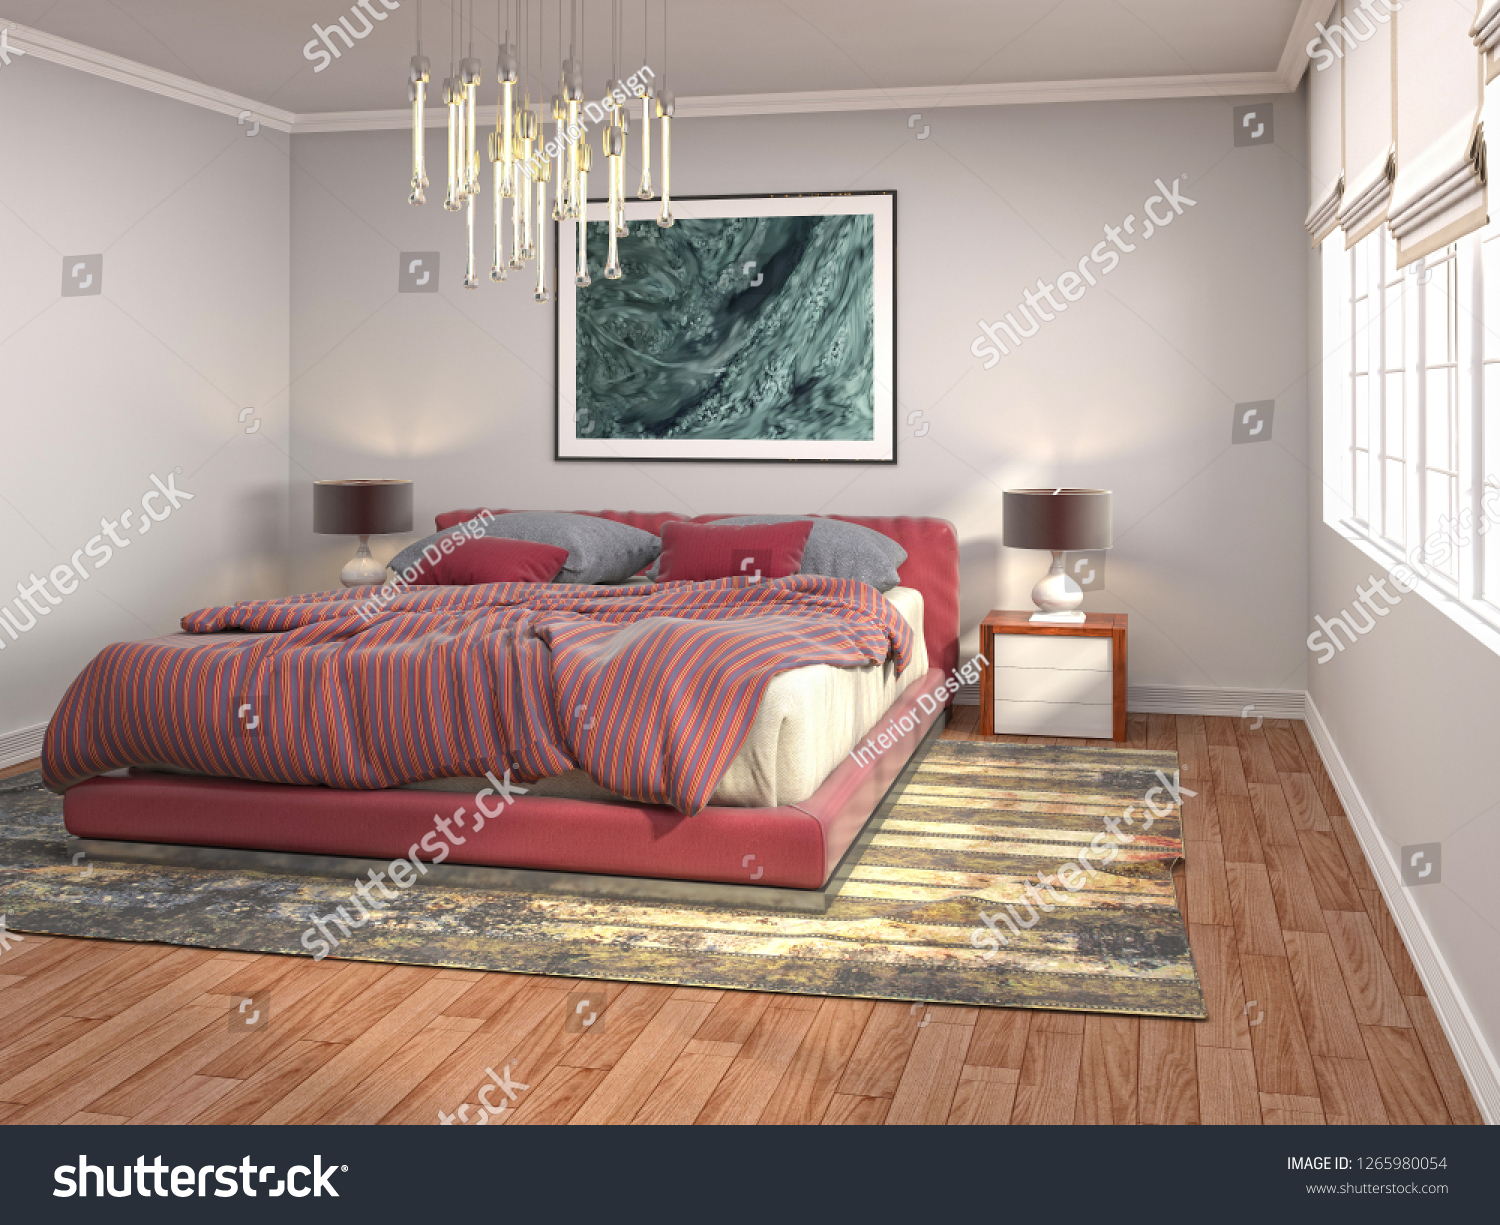 Bedroom interior. 3d illustration #1265980054